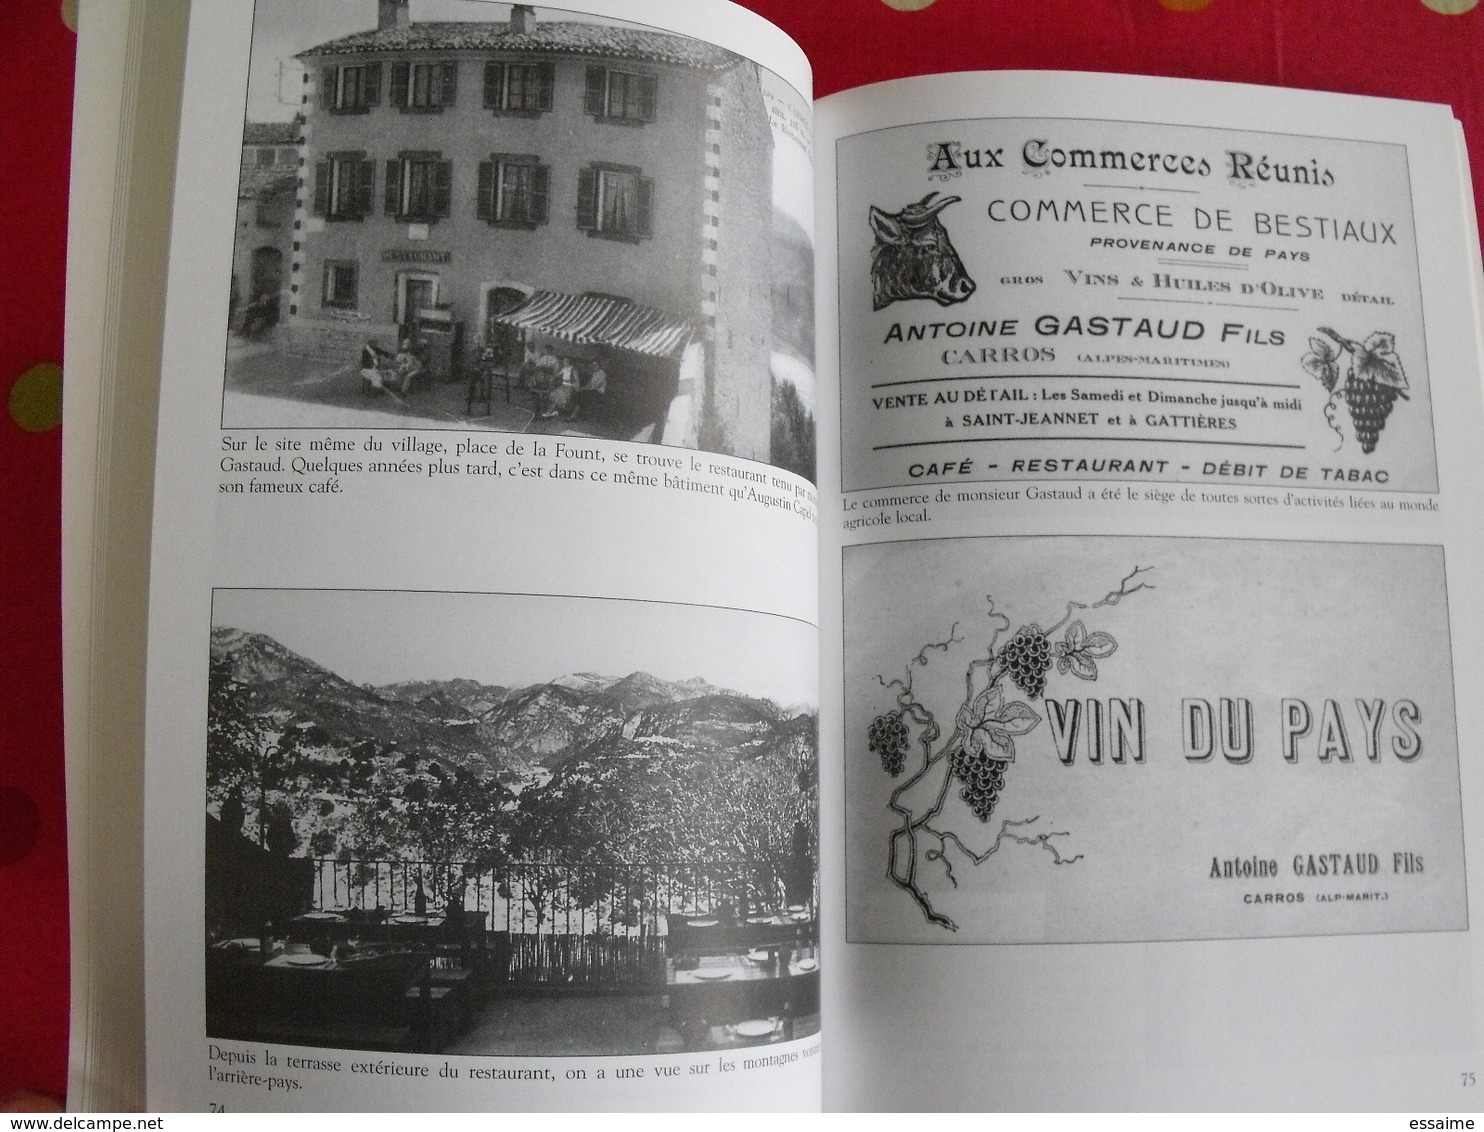 Carros. Provence. Mairie de Carros. Mémoire en images. éditions Alan Sutton. 2001. cartes postales photos